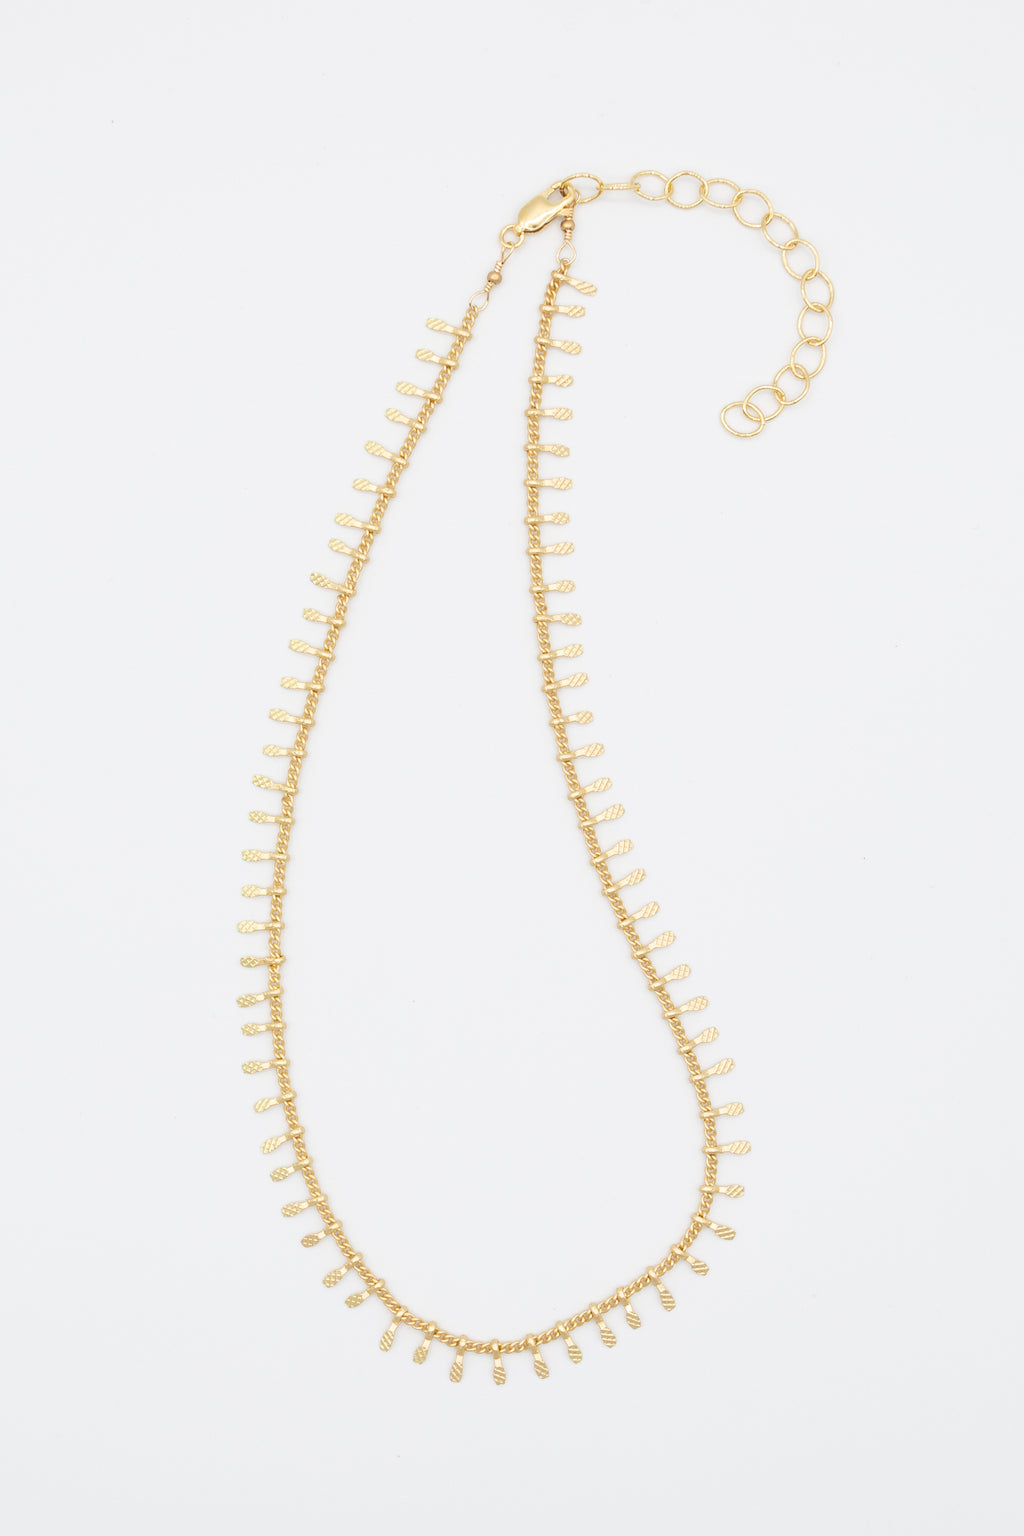 Chain chocker necklace